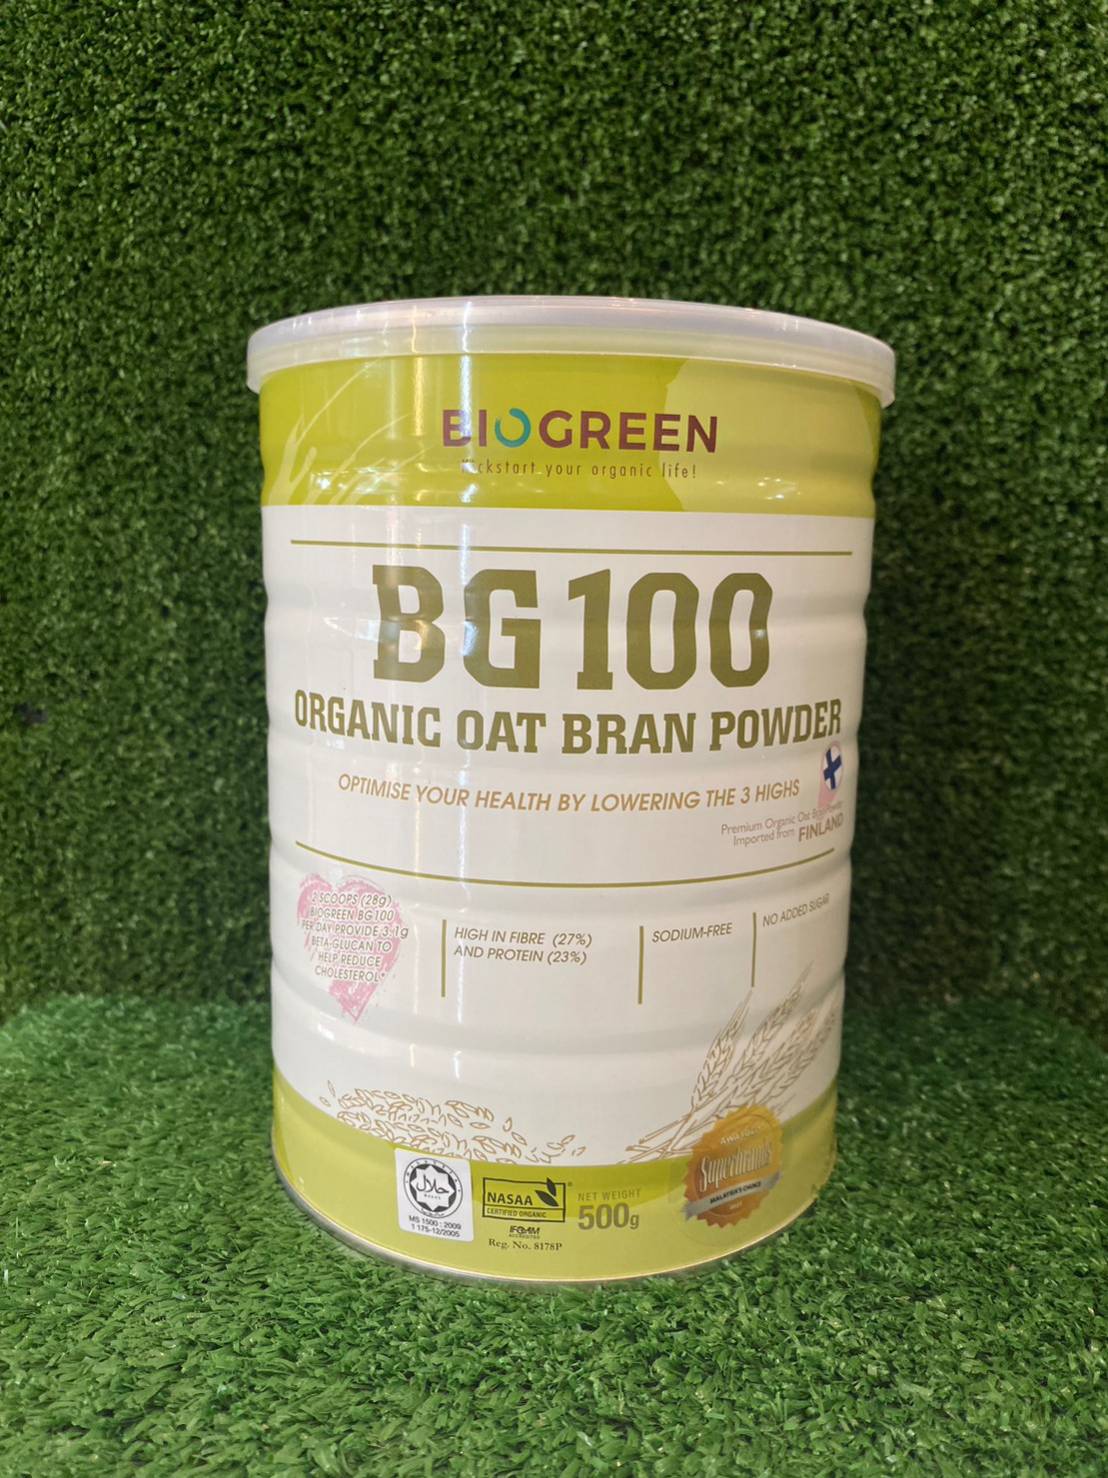 BG100 Organic Oat Bran Powder Biogreen 500g.